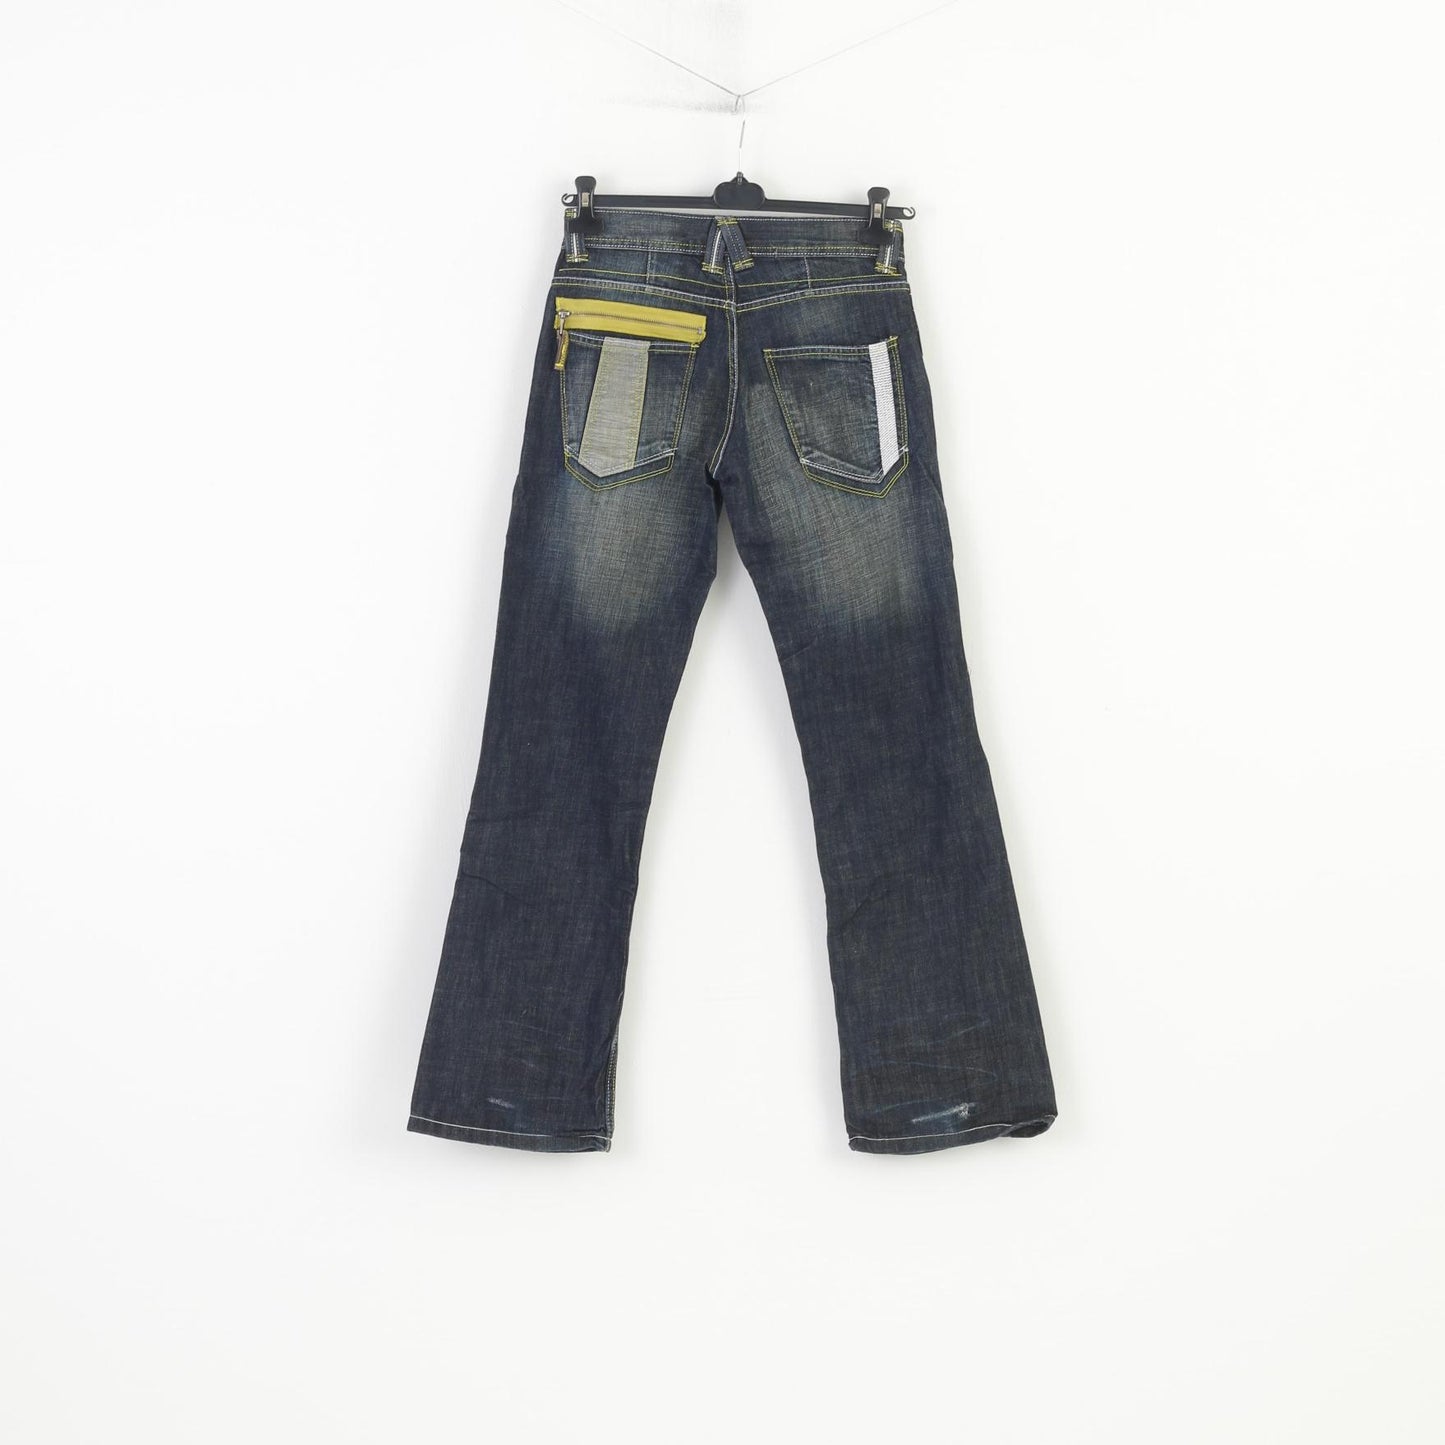 Hoi Polloi Men 8 Jeans Trousers Navy Cotton Vintage Pockets Zipper Pants